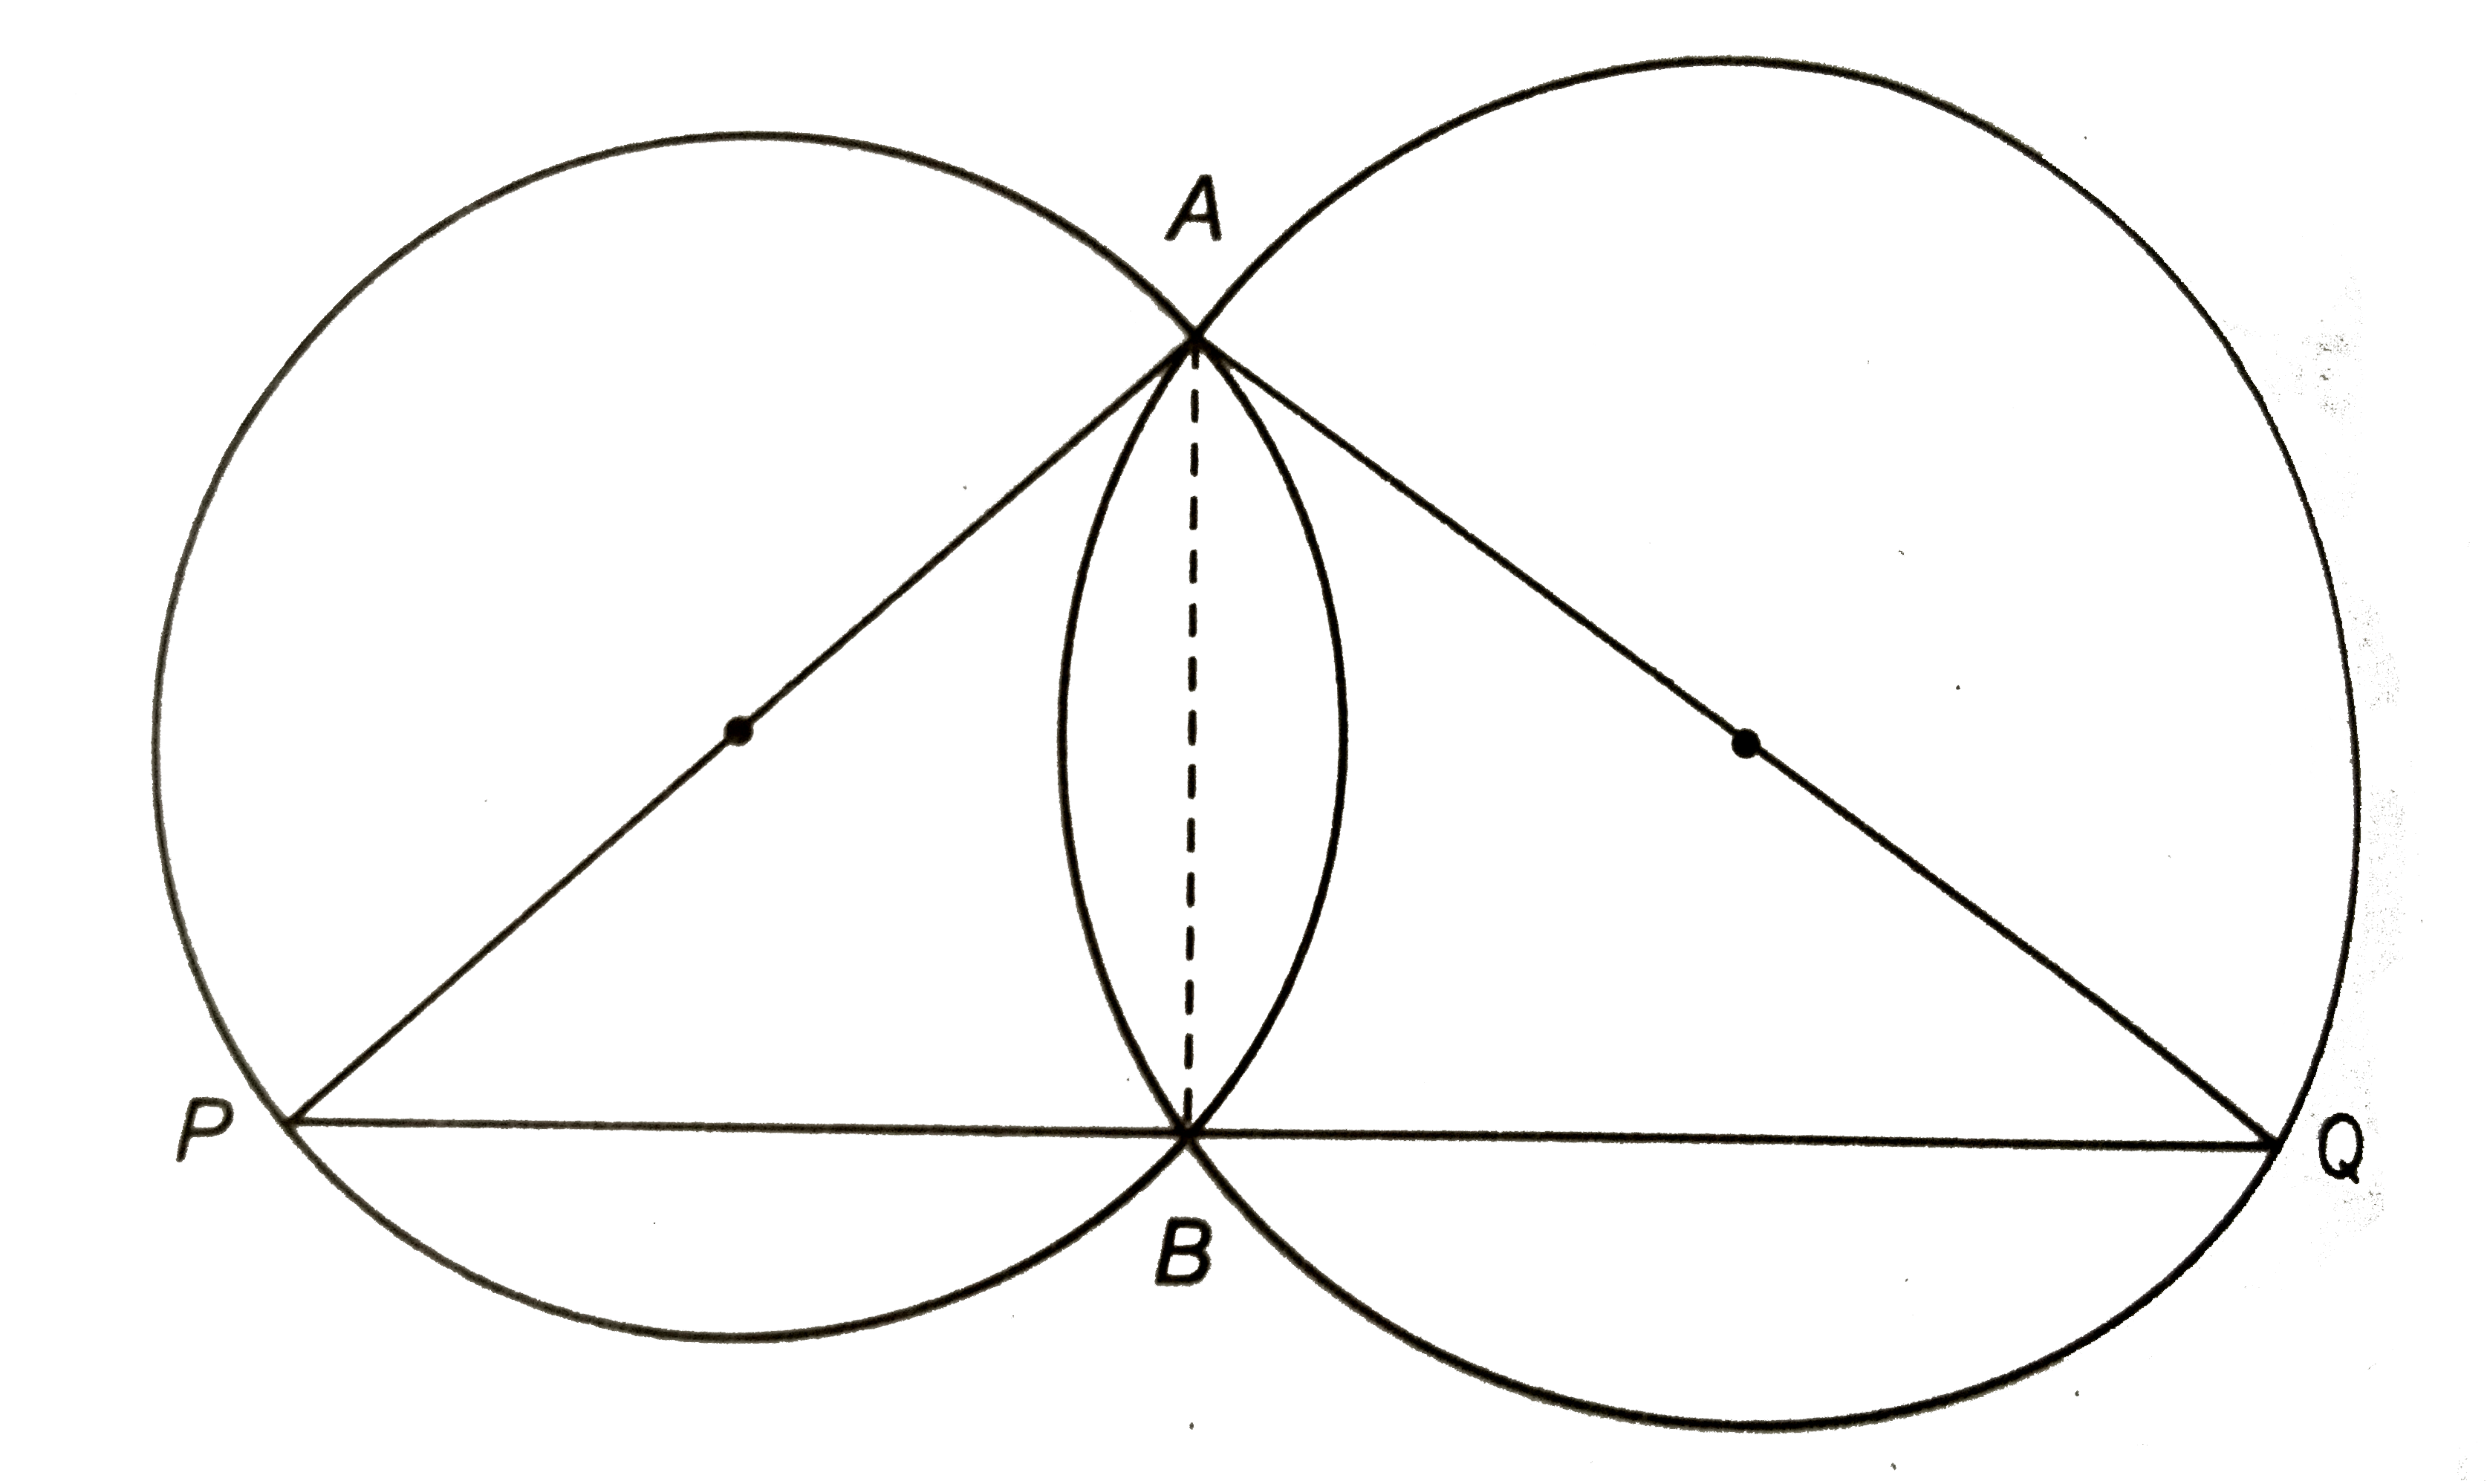 संलग्न चित्र में दो वृत्त एक-दूसरे को A और B पर काट रहे हैं | वृत्तों के व्यास AP और AQ हैं | सिद्ध कीजिए कि PBQ एक सरल रेखा है |